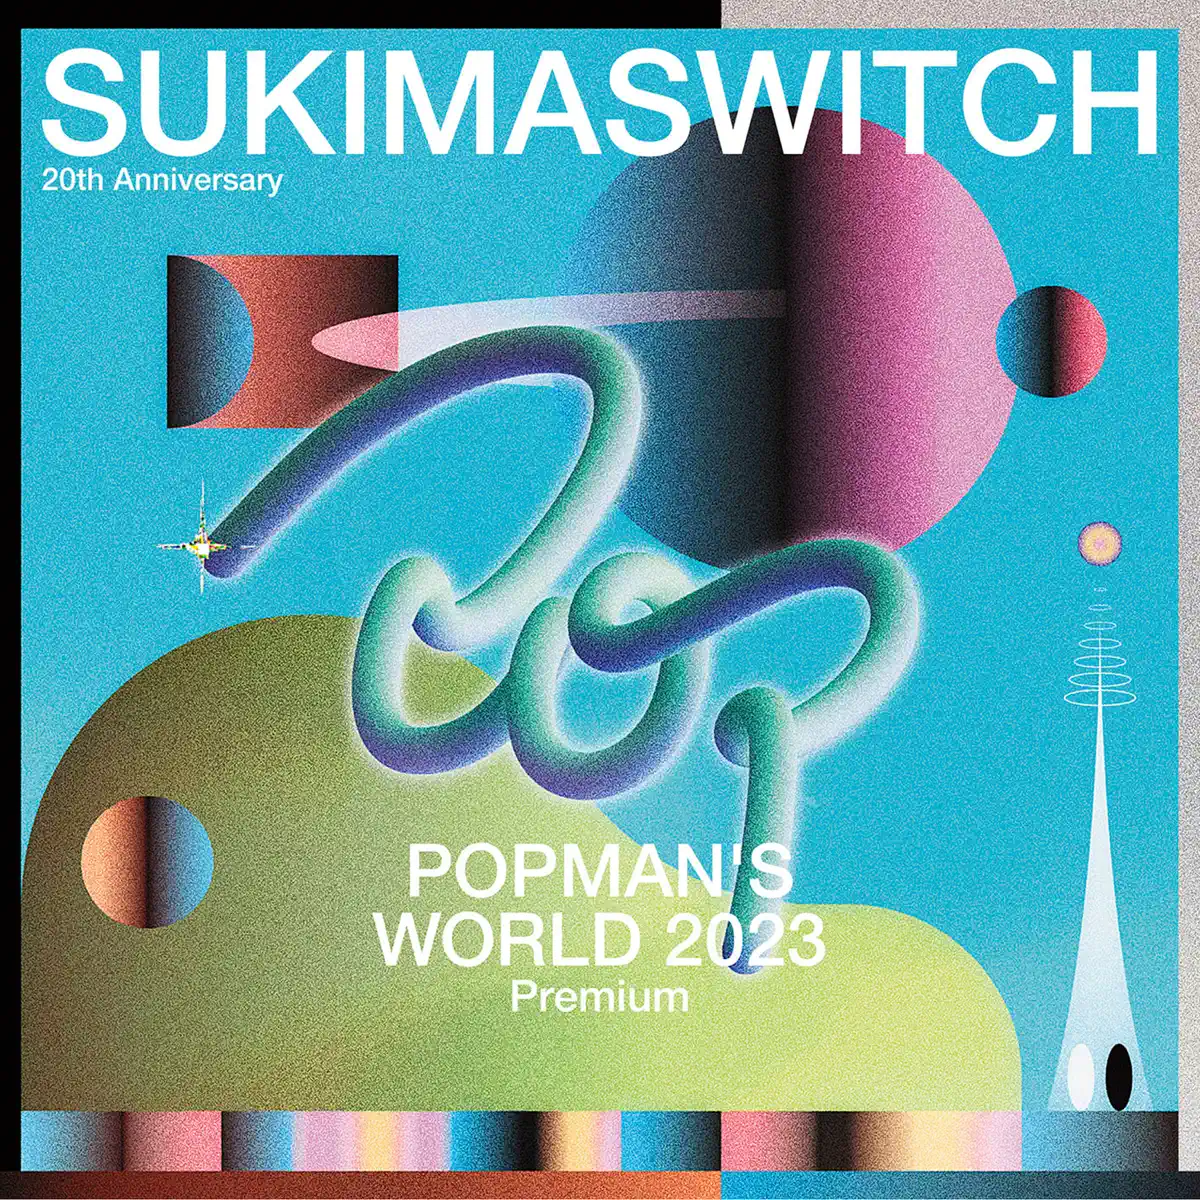 無限開關 スキマスイッチ - SUKIMASWITCH 20th Anniversary "POPMAN』S WORLD 2023 Premium" (Live) (2024) [iTunes Plus AAC M4A]-新房子